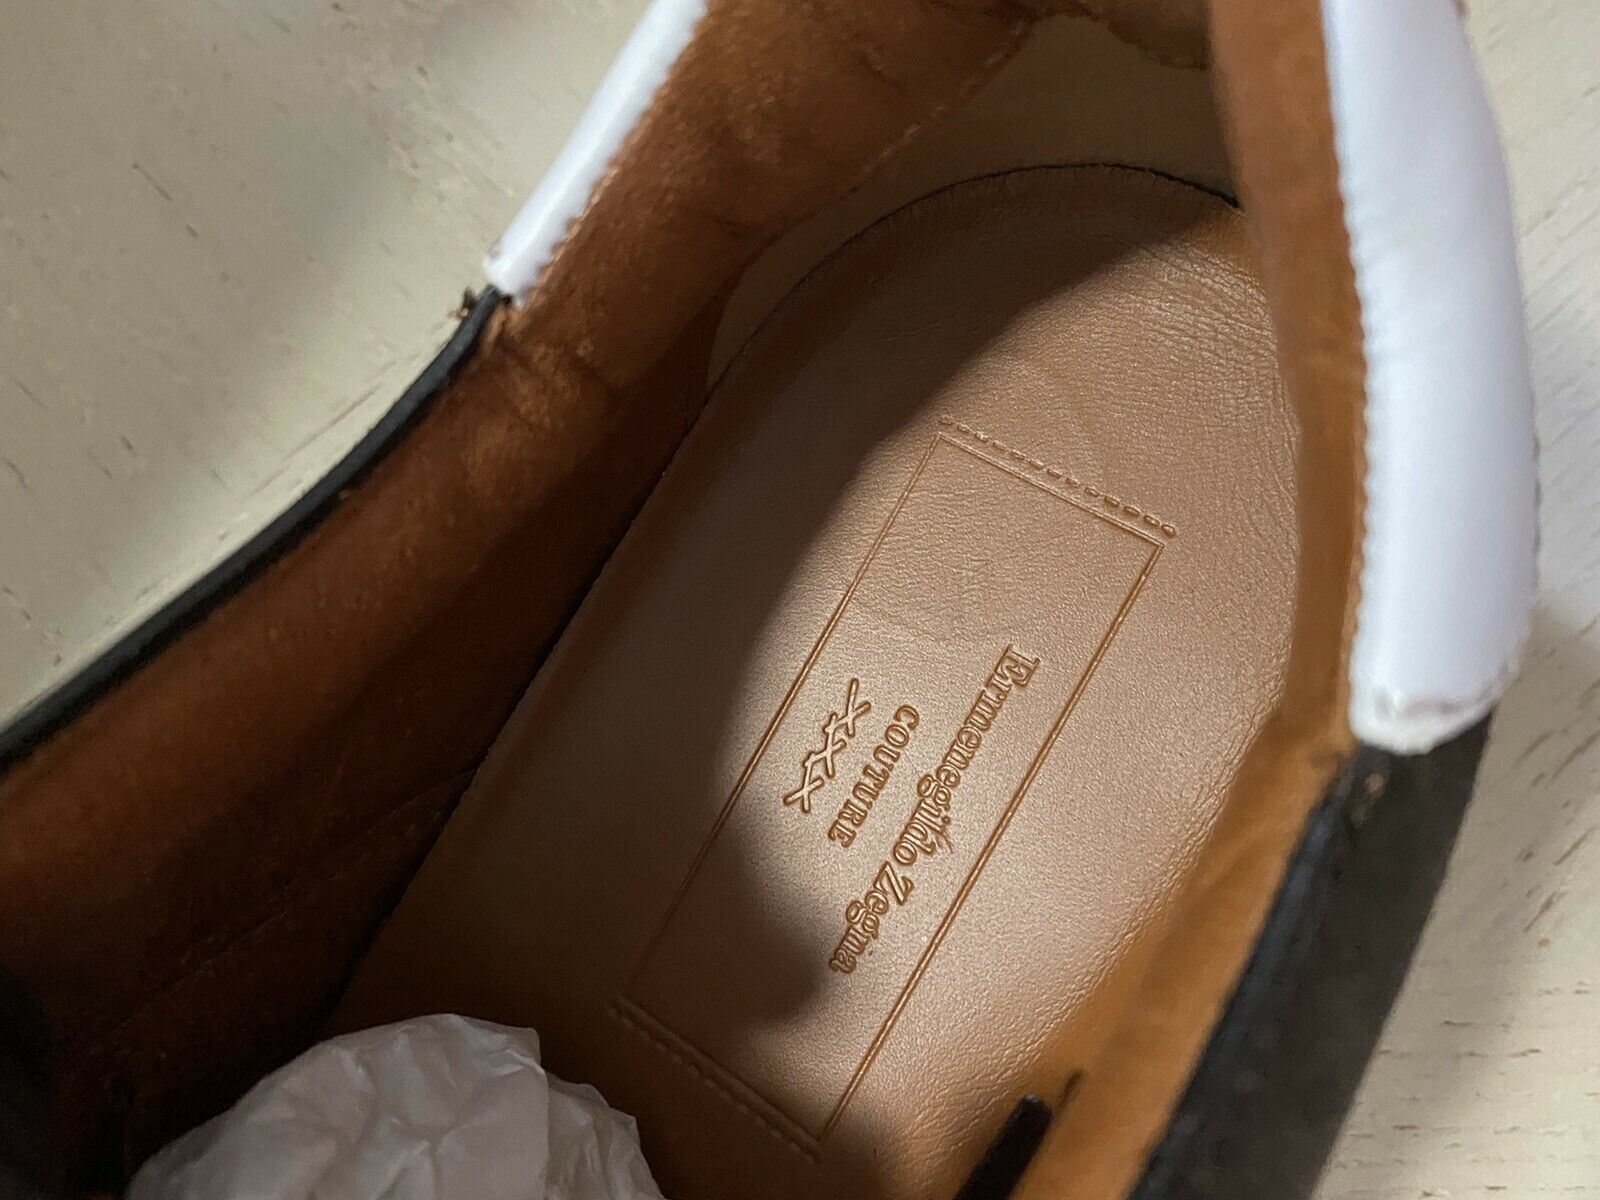 Новые замшевые/кожаные кроссовки Ermenegildo Zegna Couture за 850 долларов США Темно-коричневые 11 США